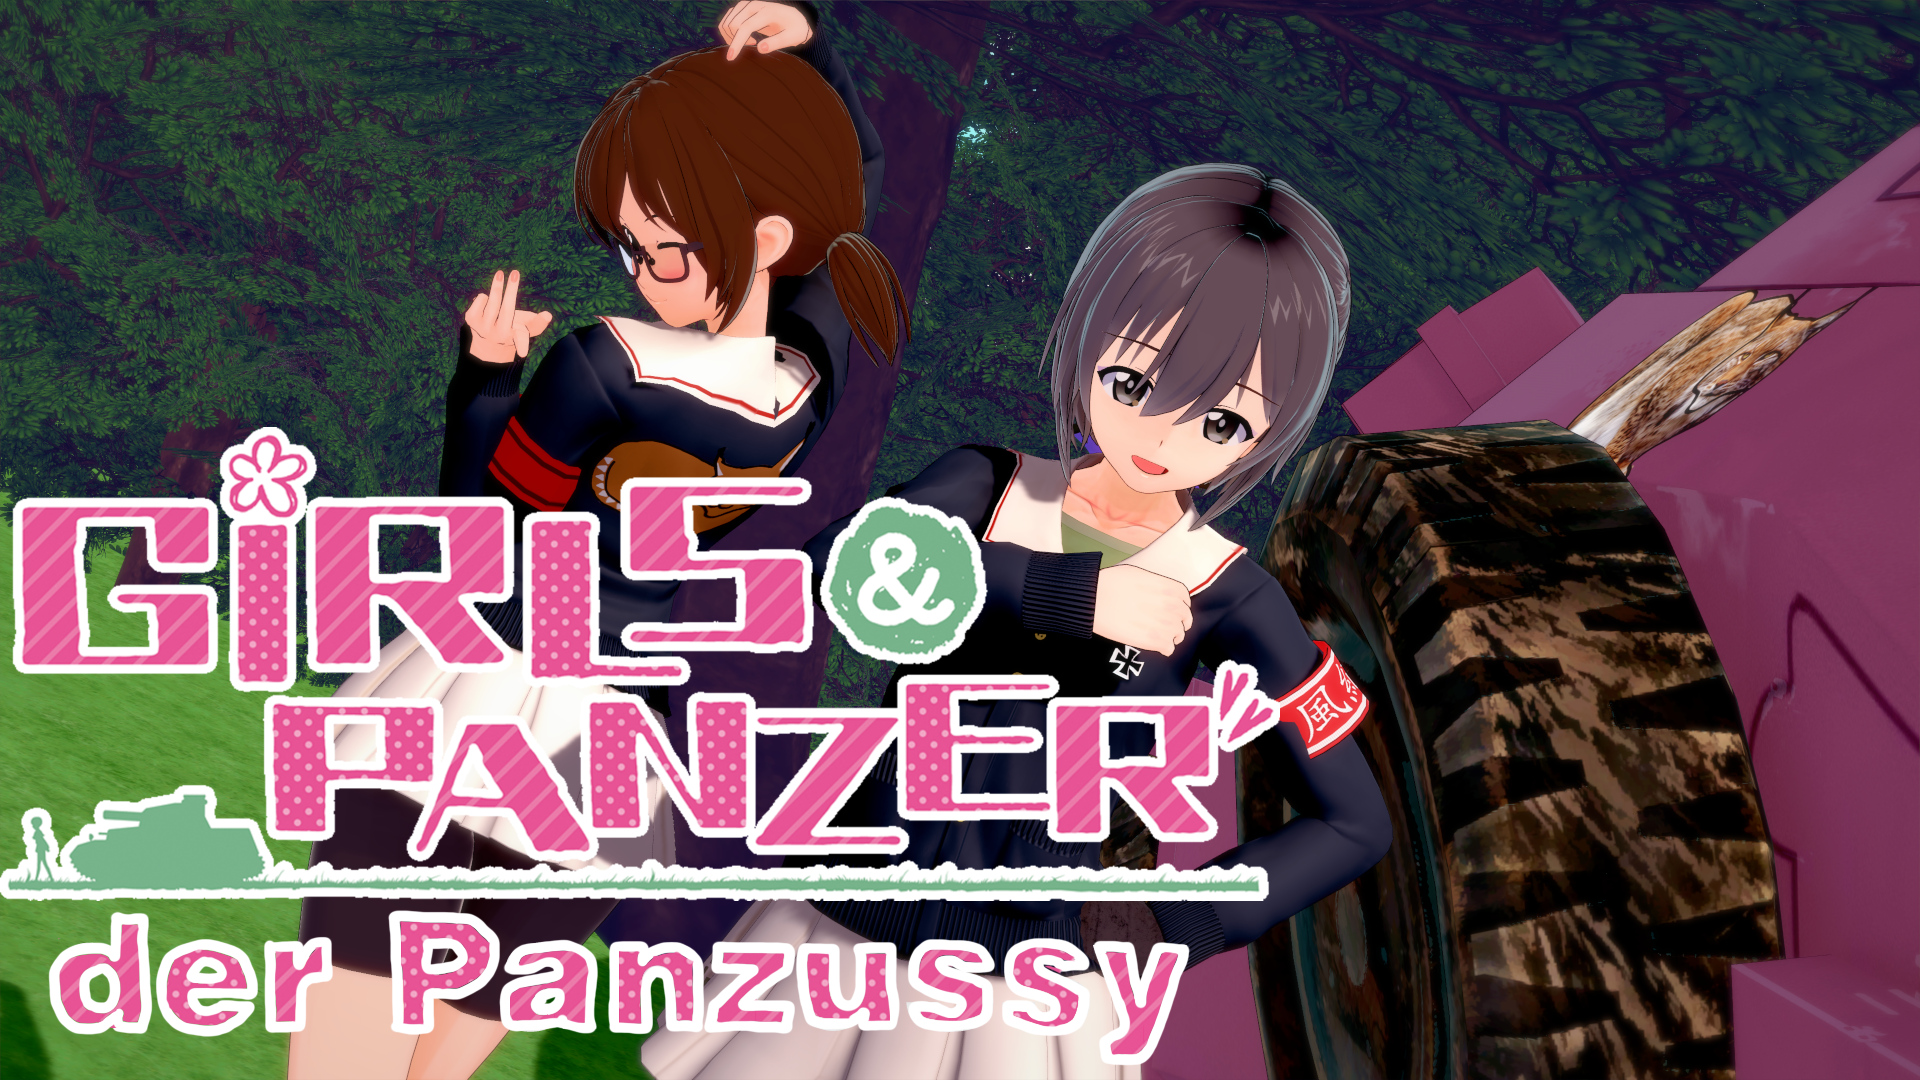 Girls und Panzer der Panzussy1.png